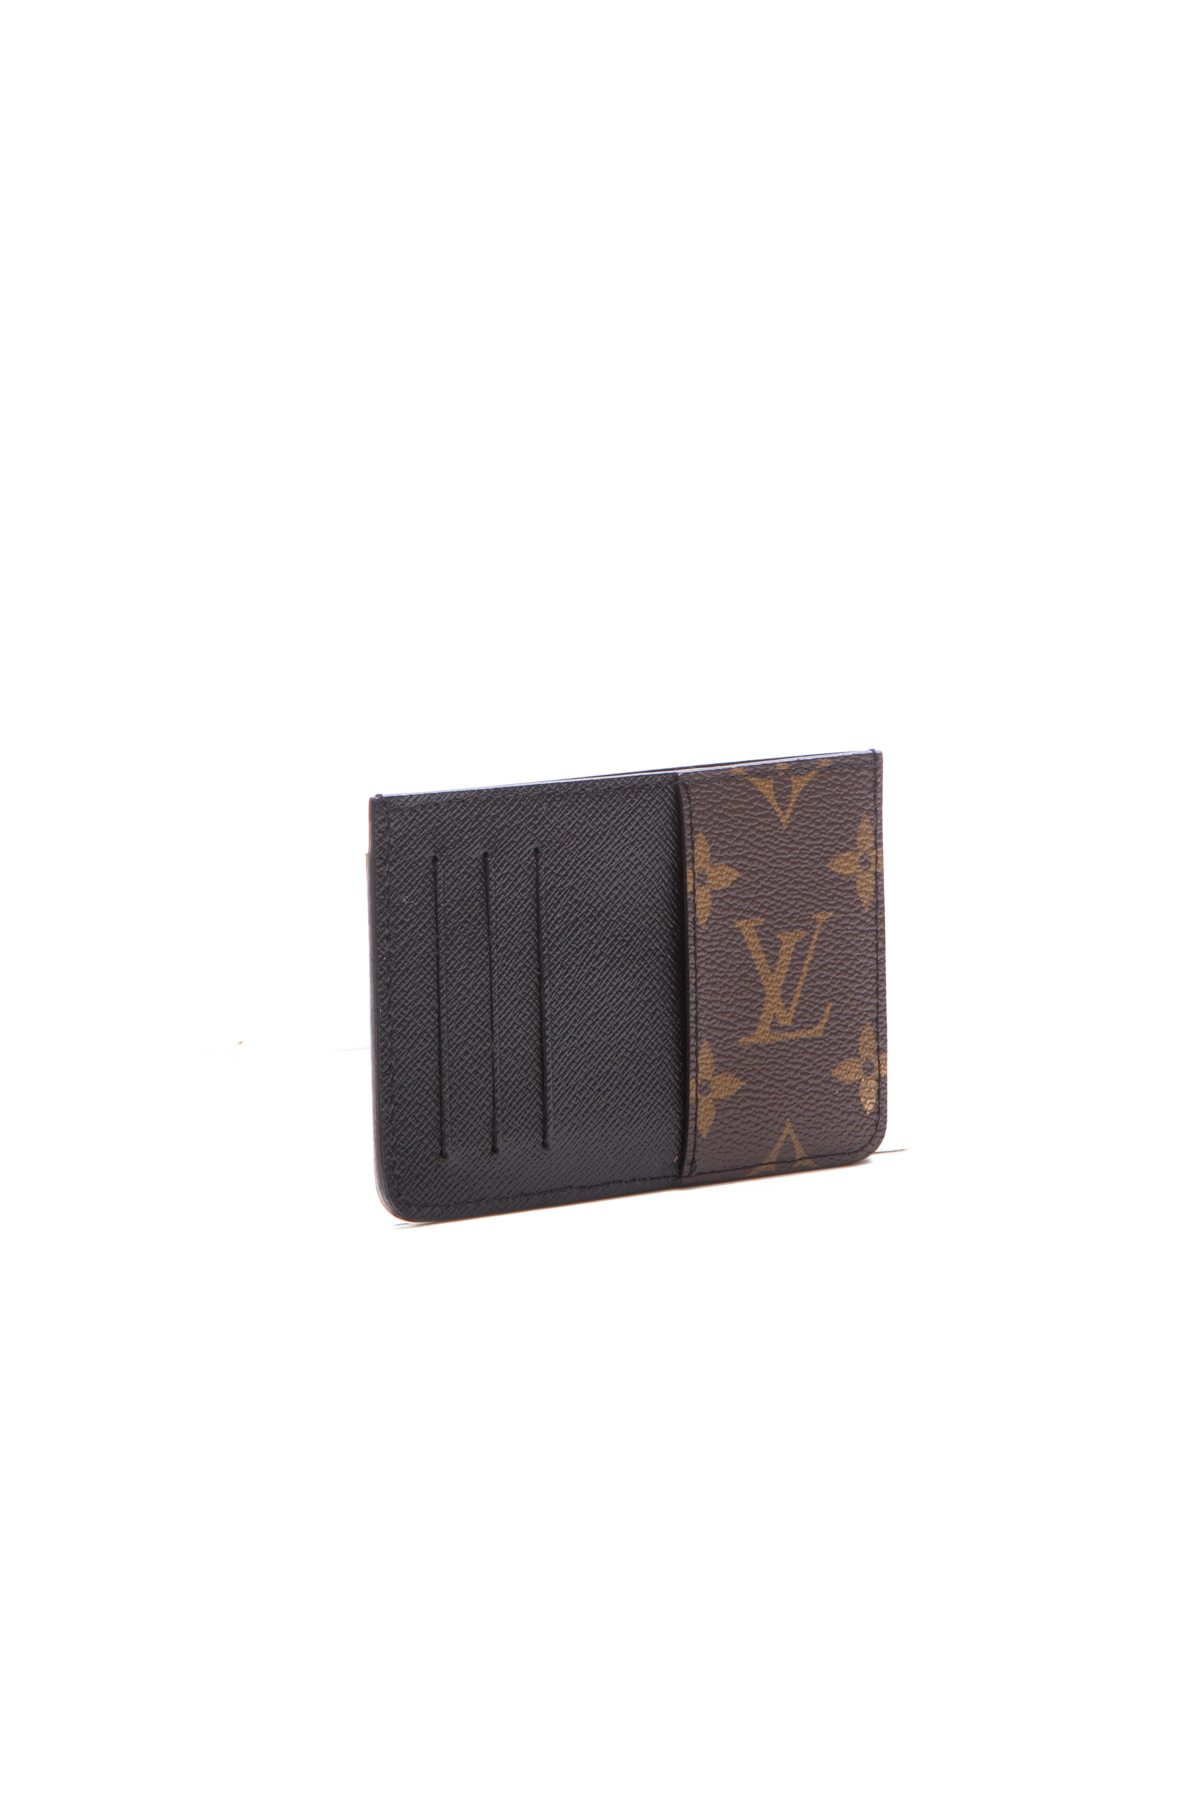 Louis Vuitton Recto Verso Card Holder - Couture USA